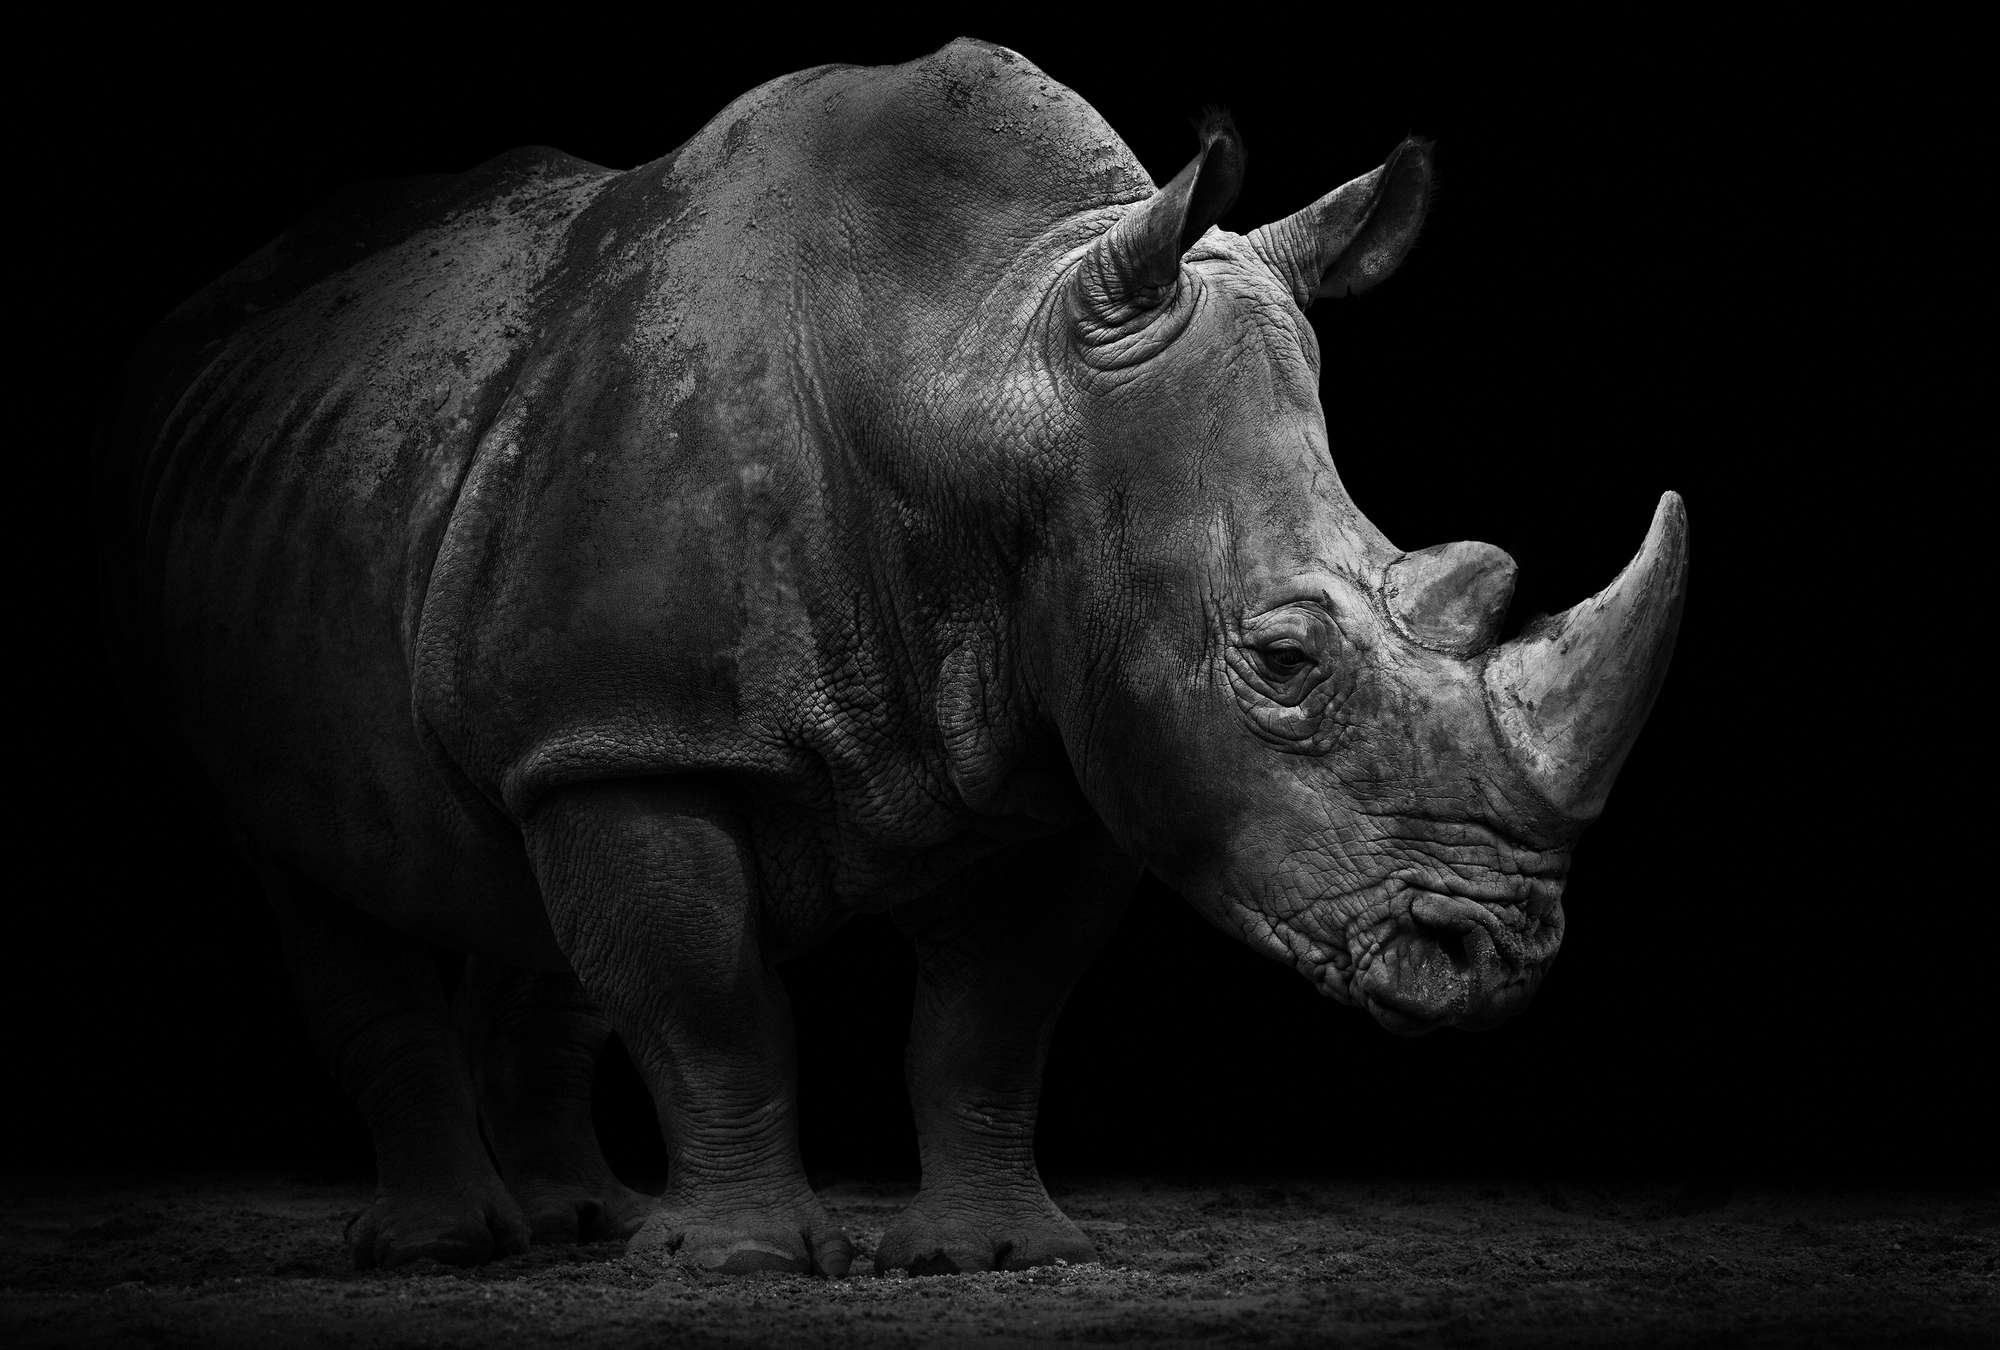             Papier peint rhinocéros sur fond noir
        